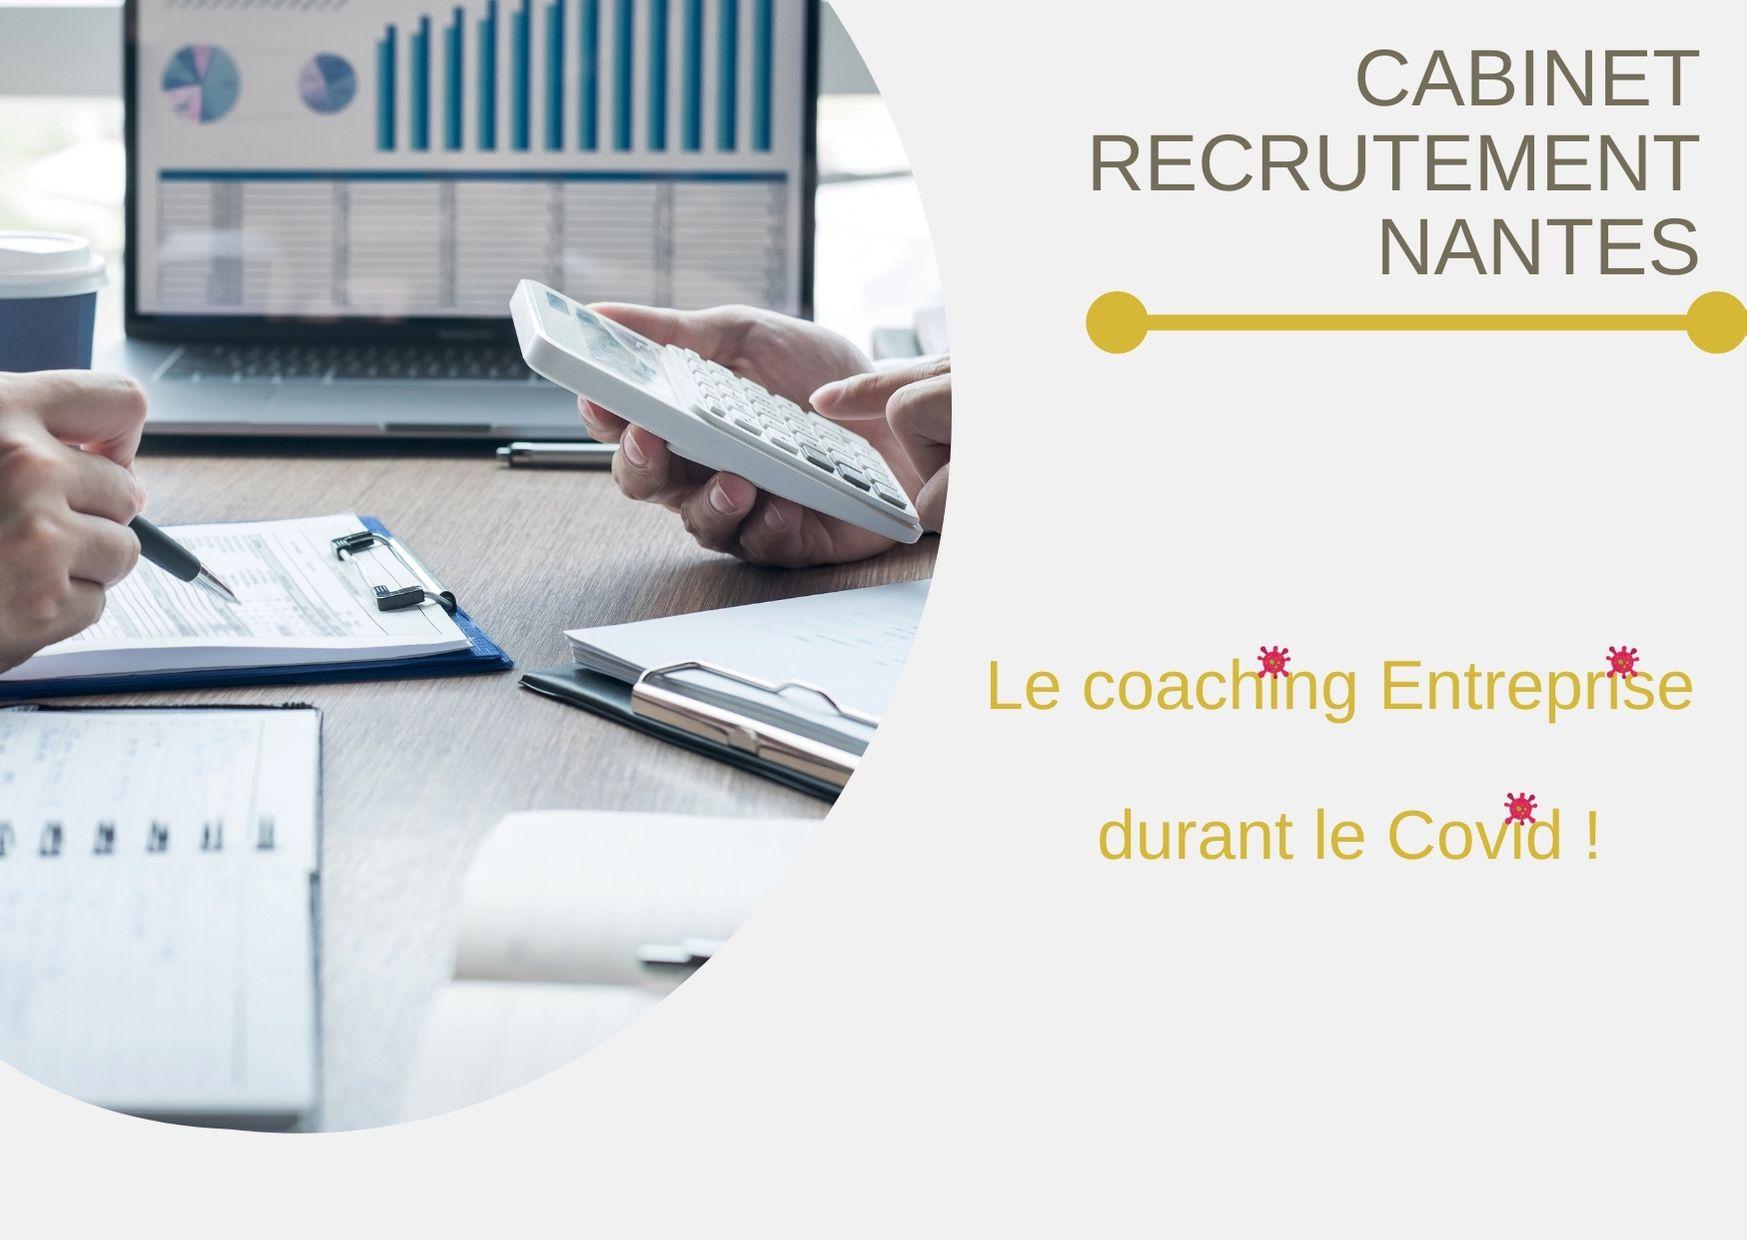 Coaching Entreprise durant le Covid par Euphuia – Cabinet recrutement Nantes